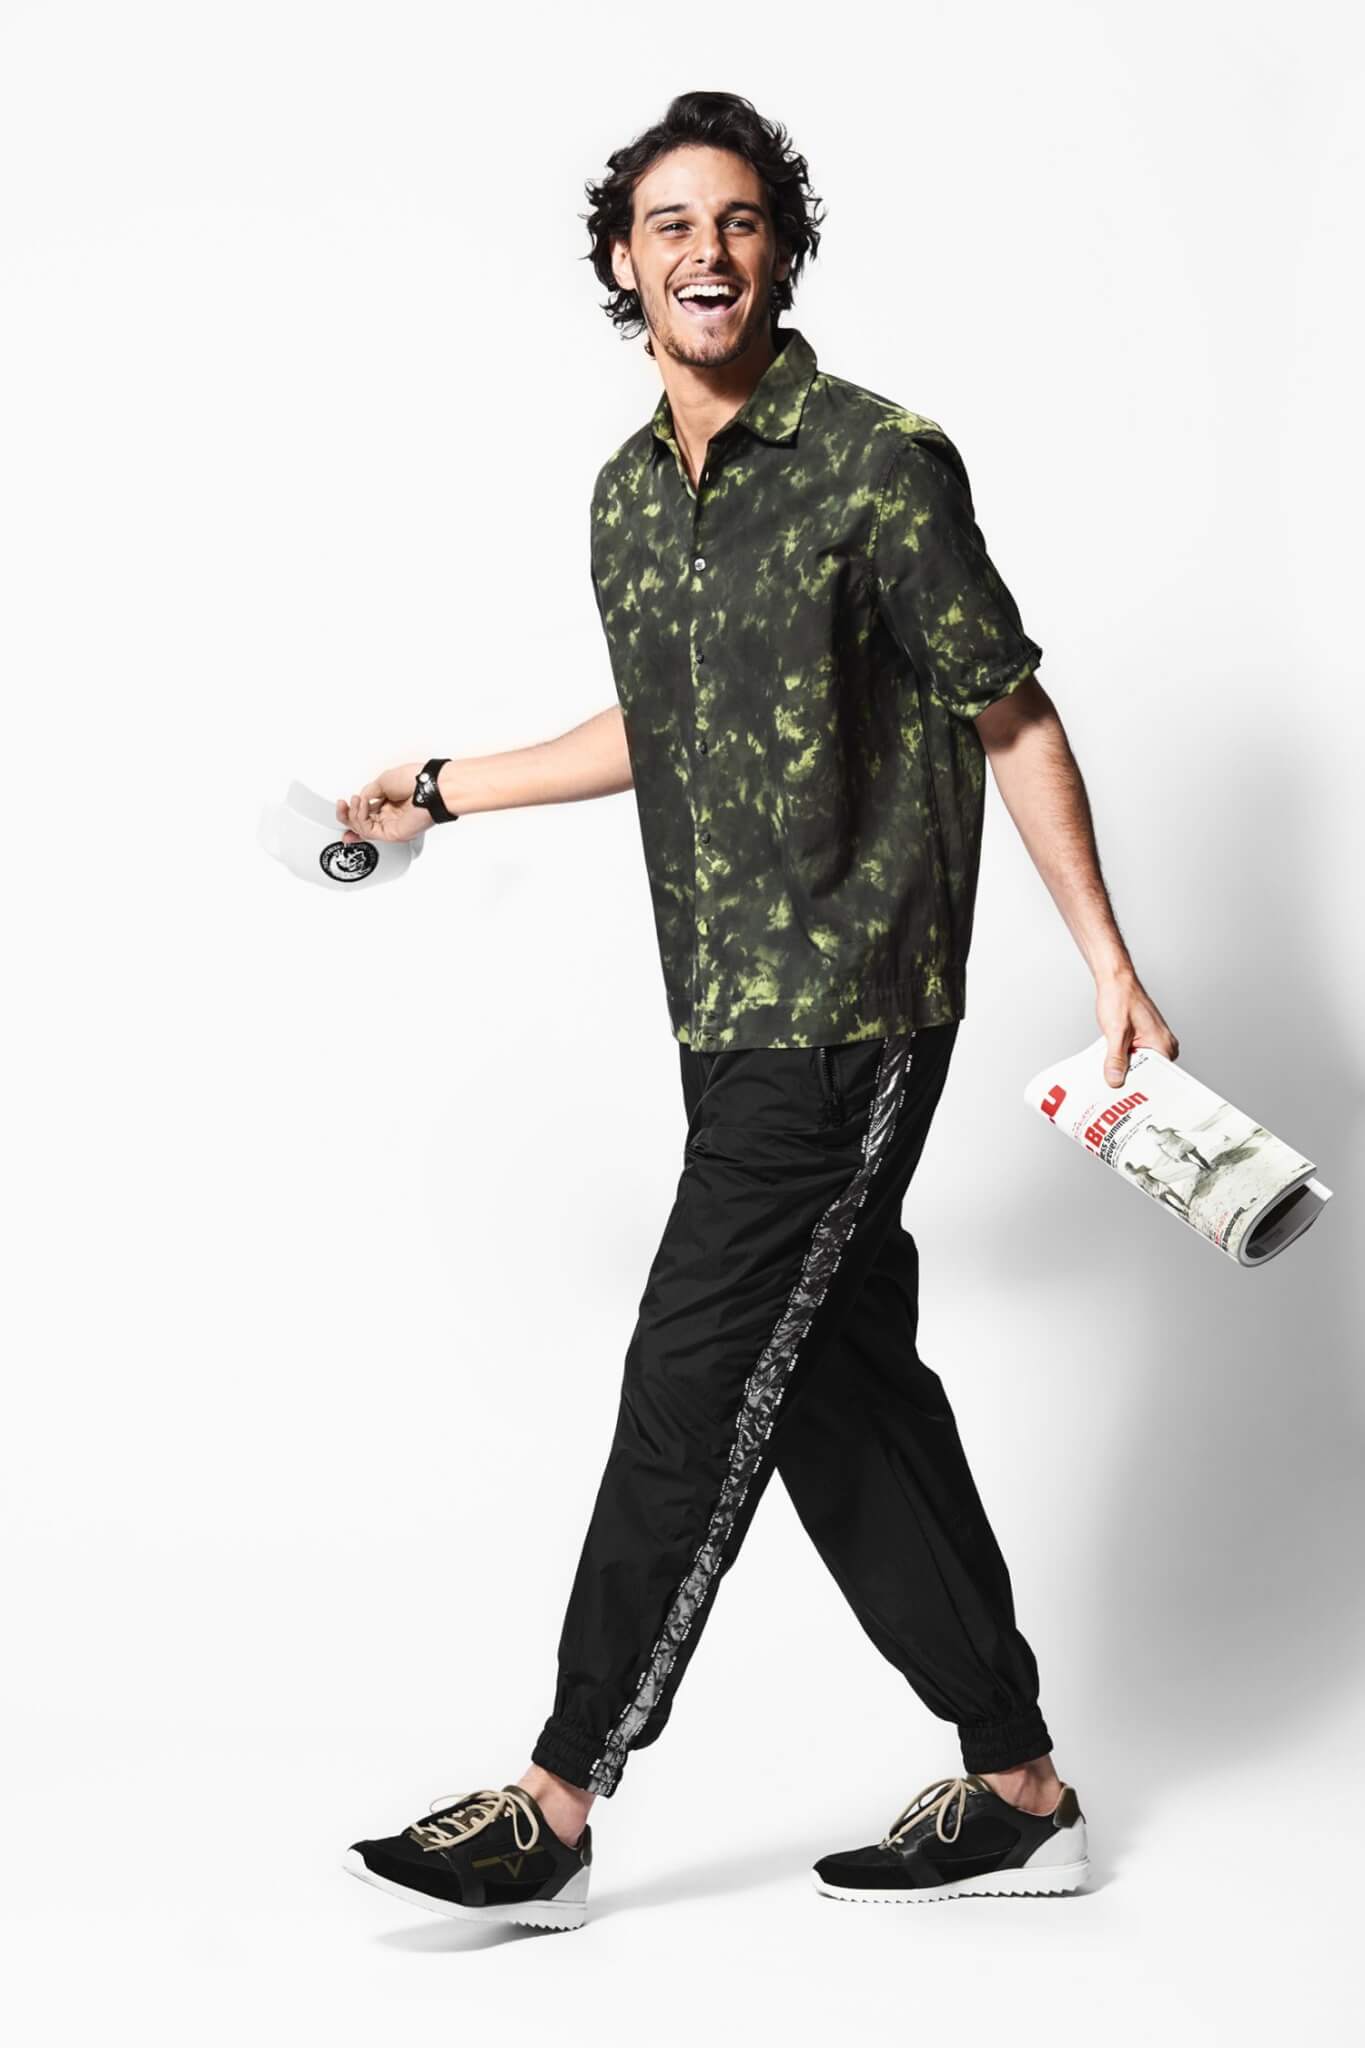 ５ ６月に重宝するシャツを粋に着こなす術とは メンズファッションメディア Otokomae 男前研究所